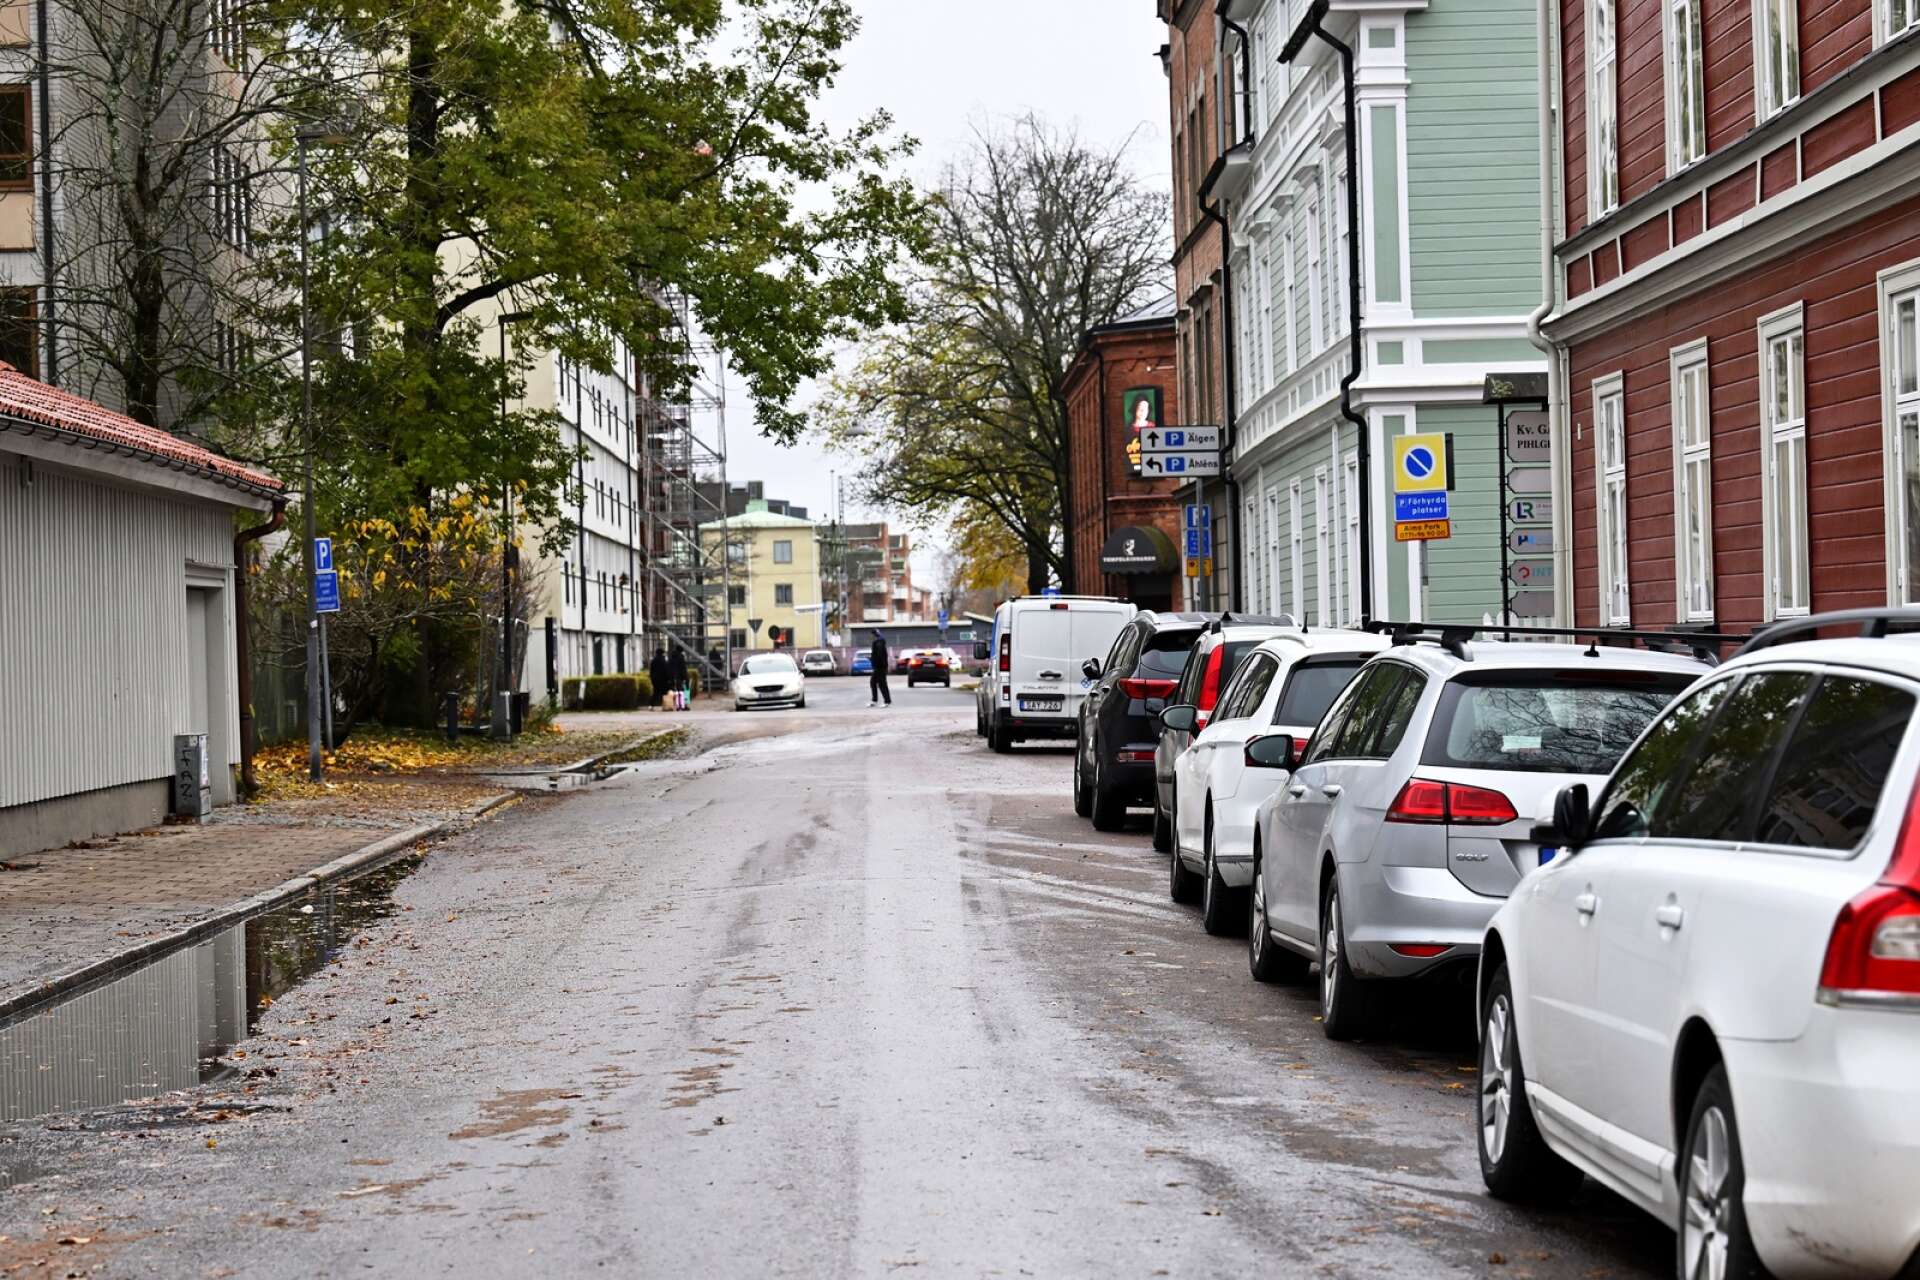 Pihlgrensgatan är en av gatorna i Karlstad där det kommer att bli billigare att gatuparkera. Enligt tjänsteförslaget ska avgiften sänkas från 18 till 16 kronor per timme. Begränsningen på två timmar slopas också.